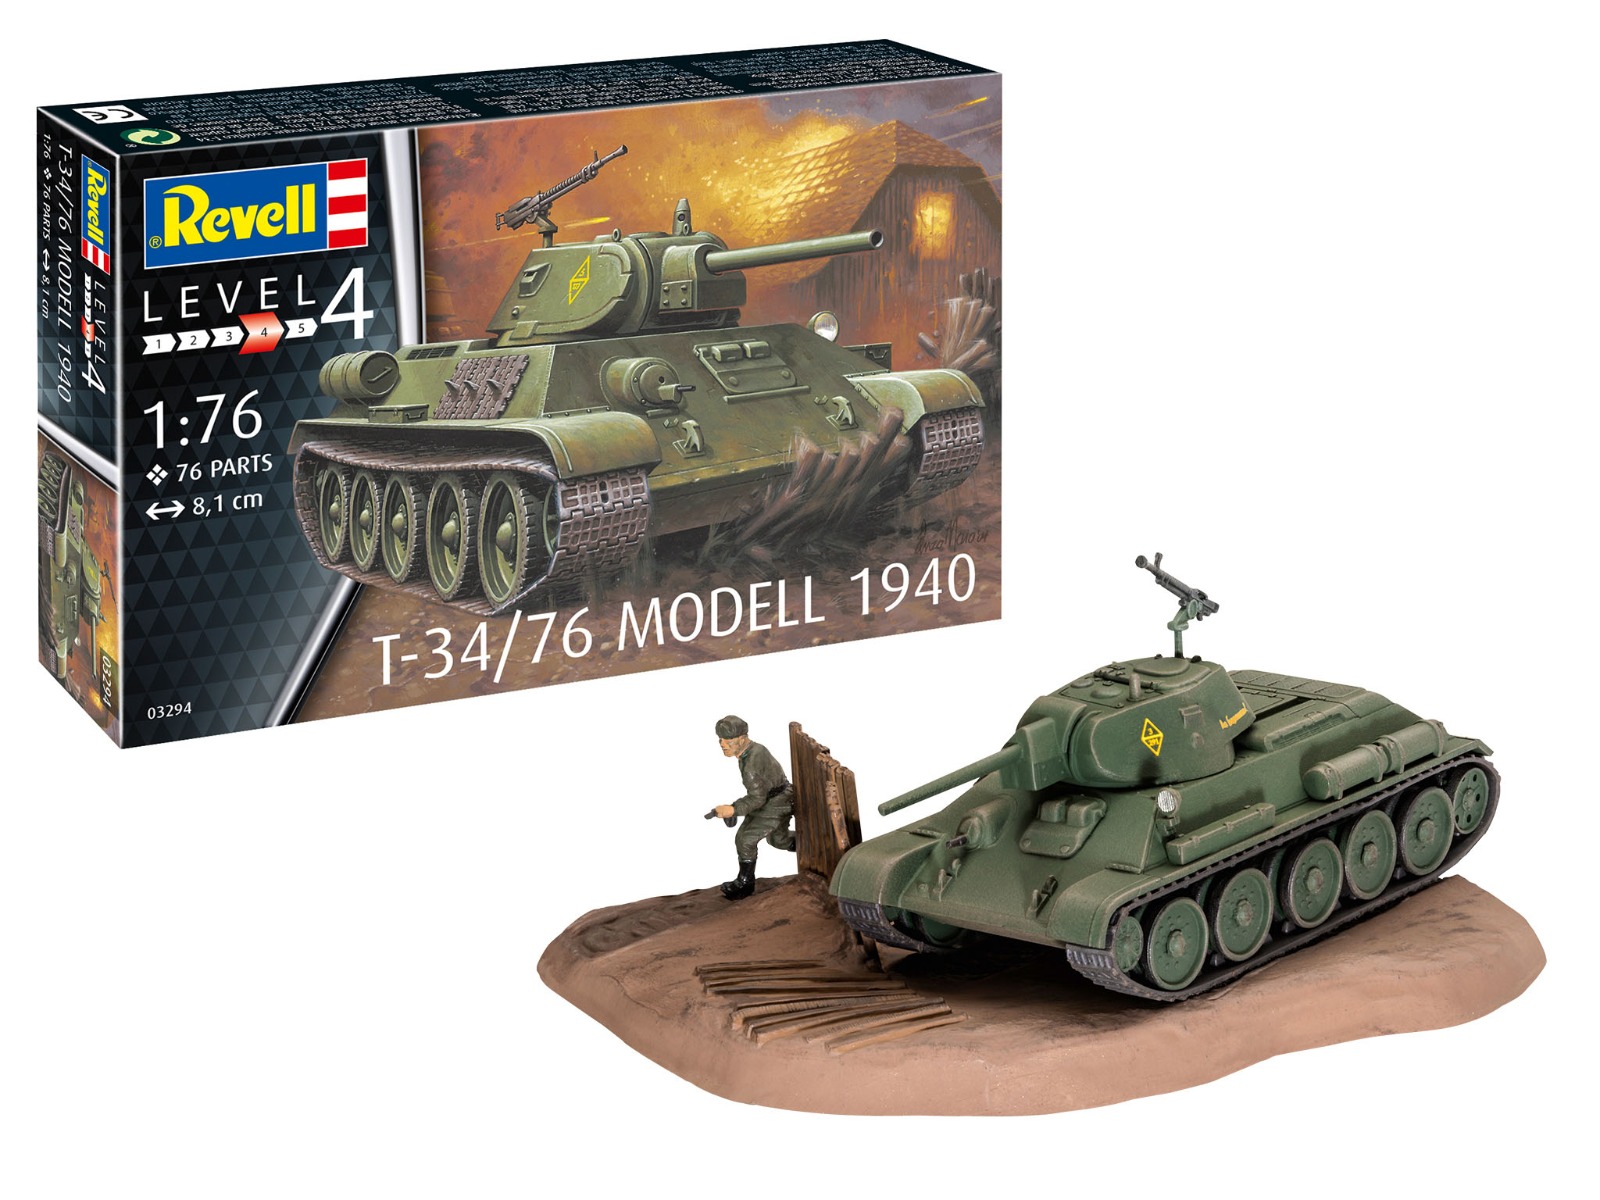 Revell 1/76 T-34/76 Modell 1940